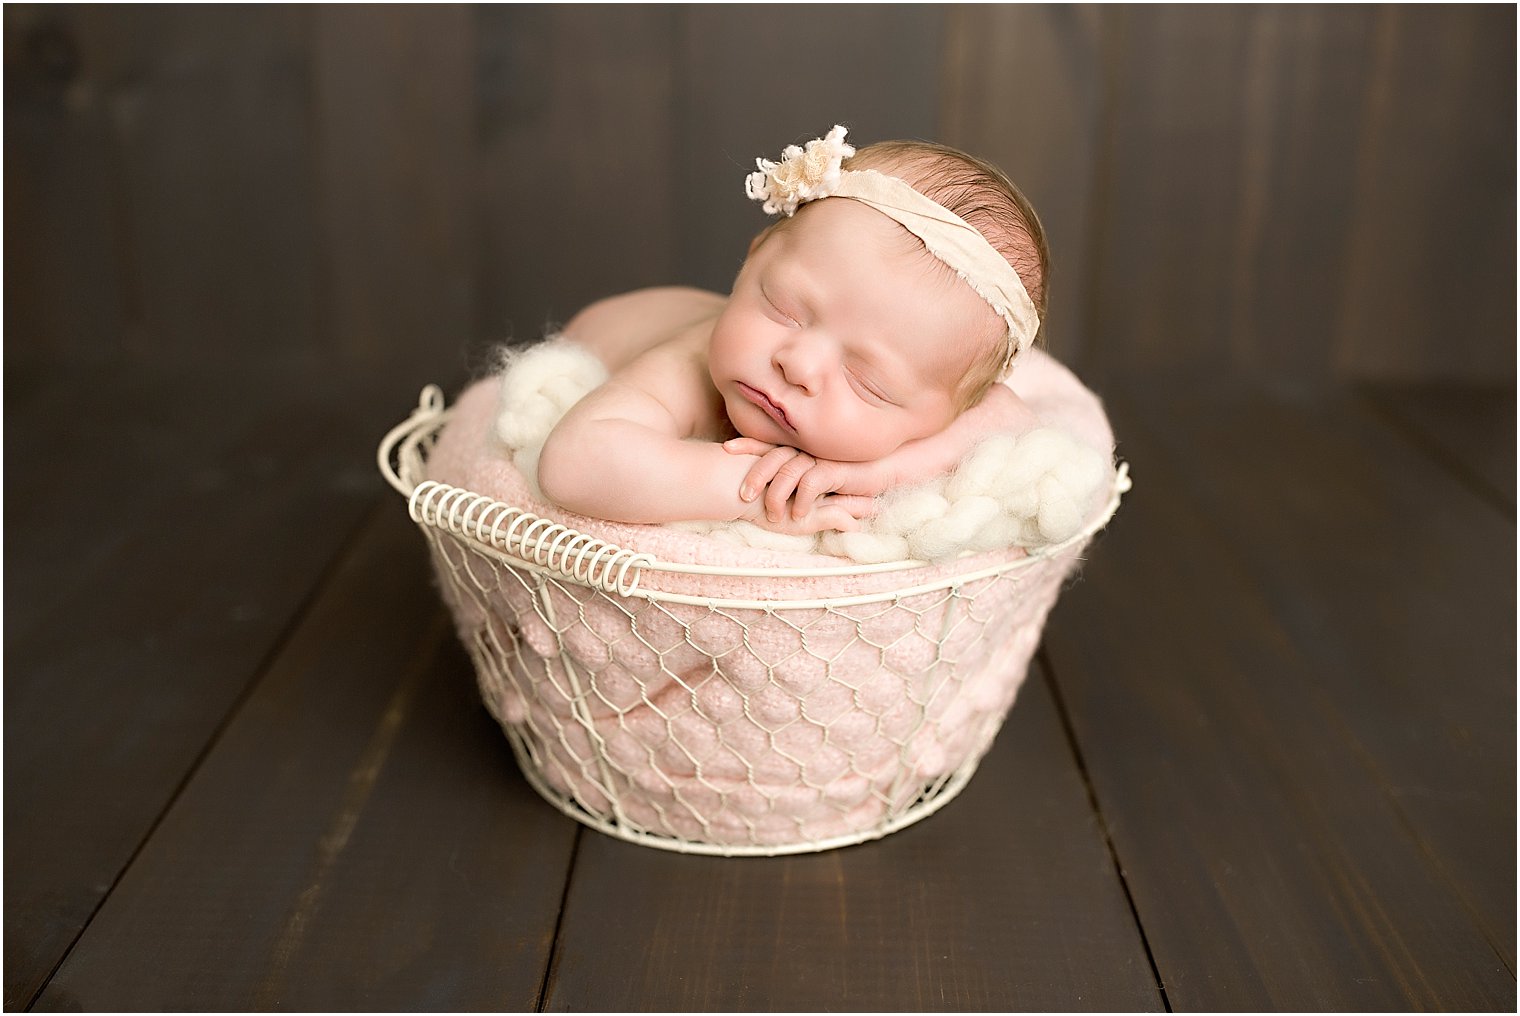 Newborn baby in a cream basket